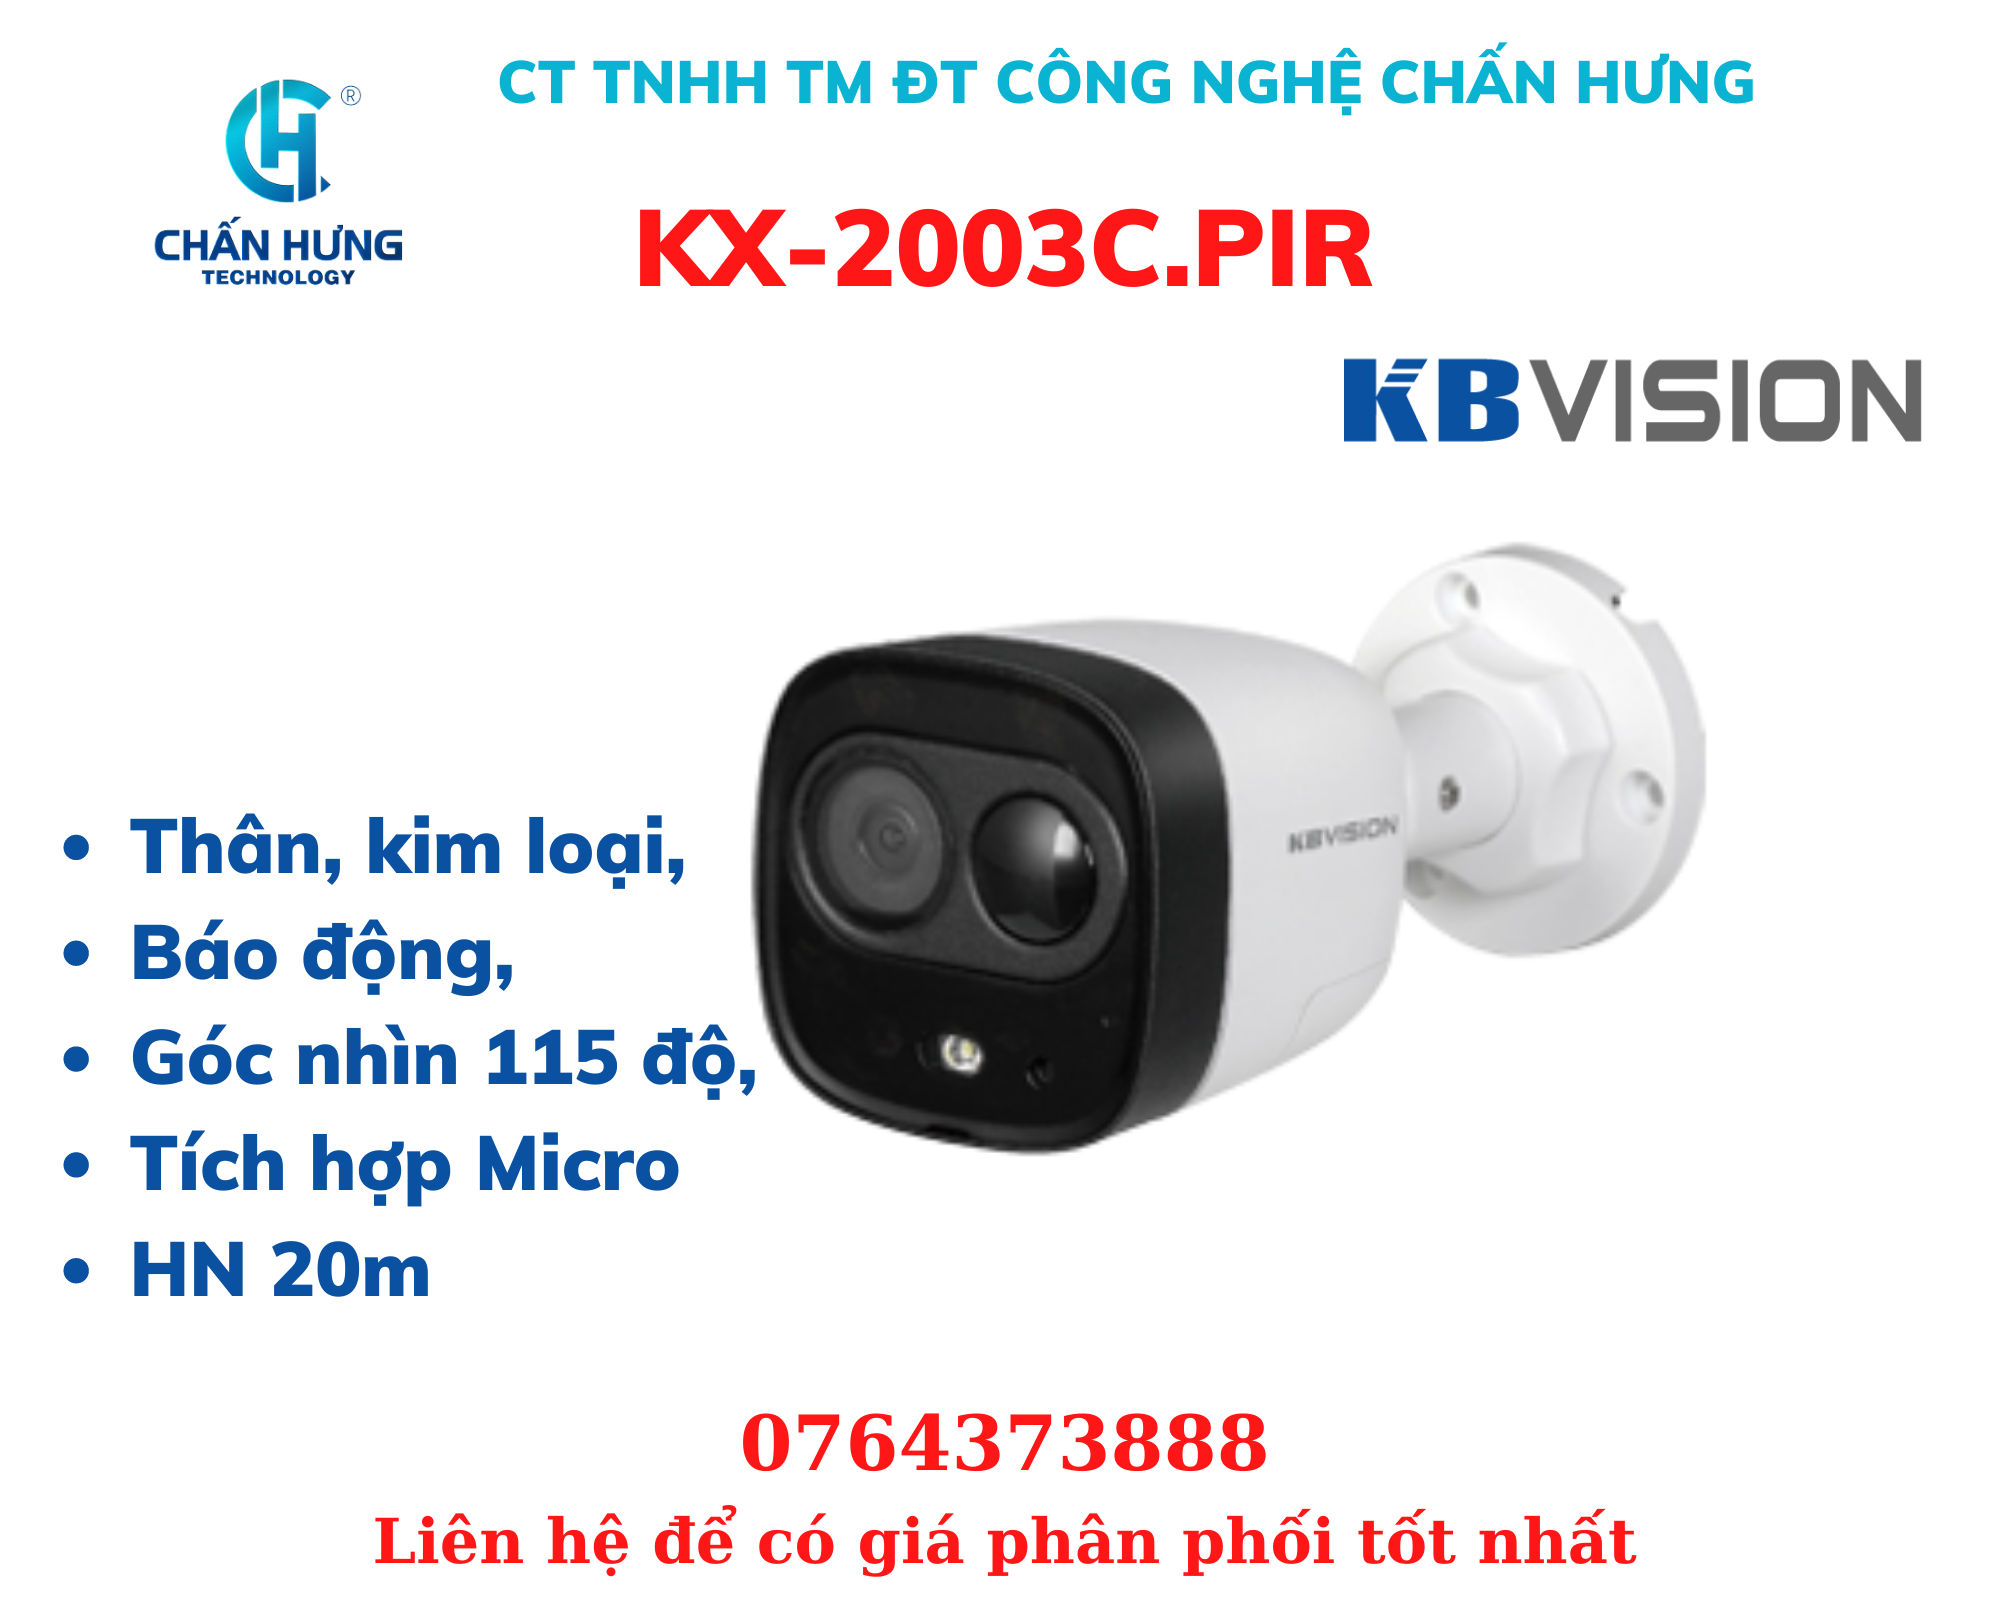 Camera KBVISION KX-2003C.PIR HDCVI hồng ngoại 2.0 Megapixel - Hàng chính hãng